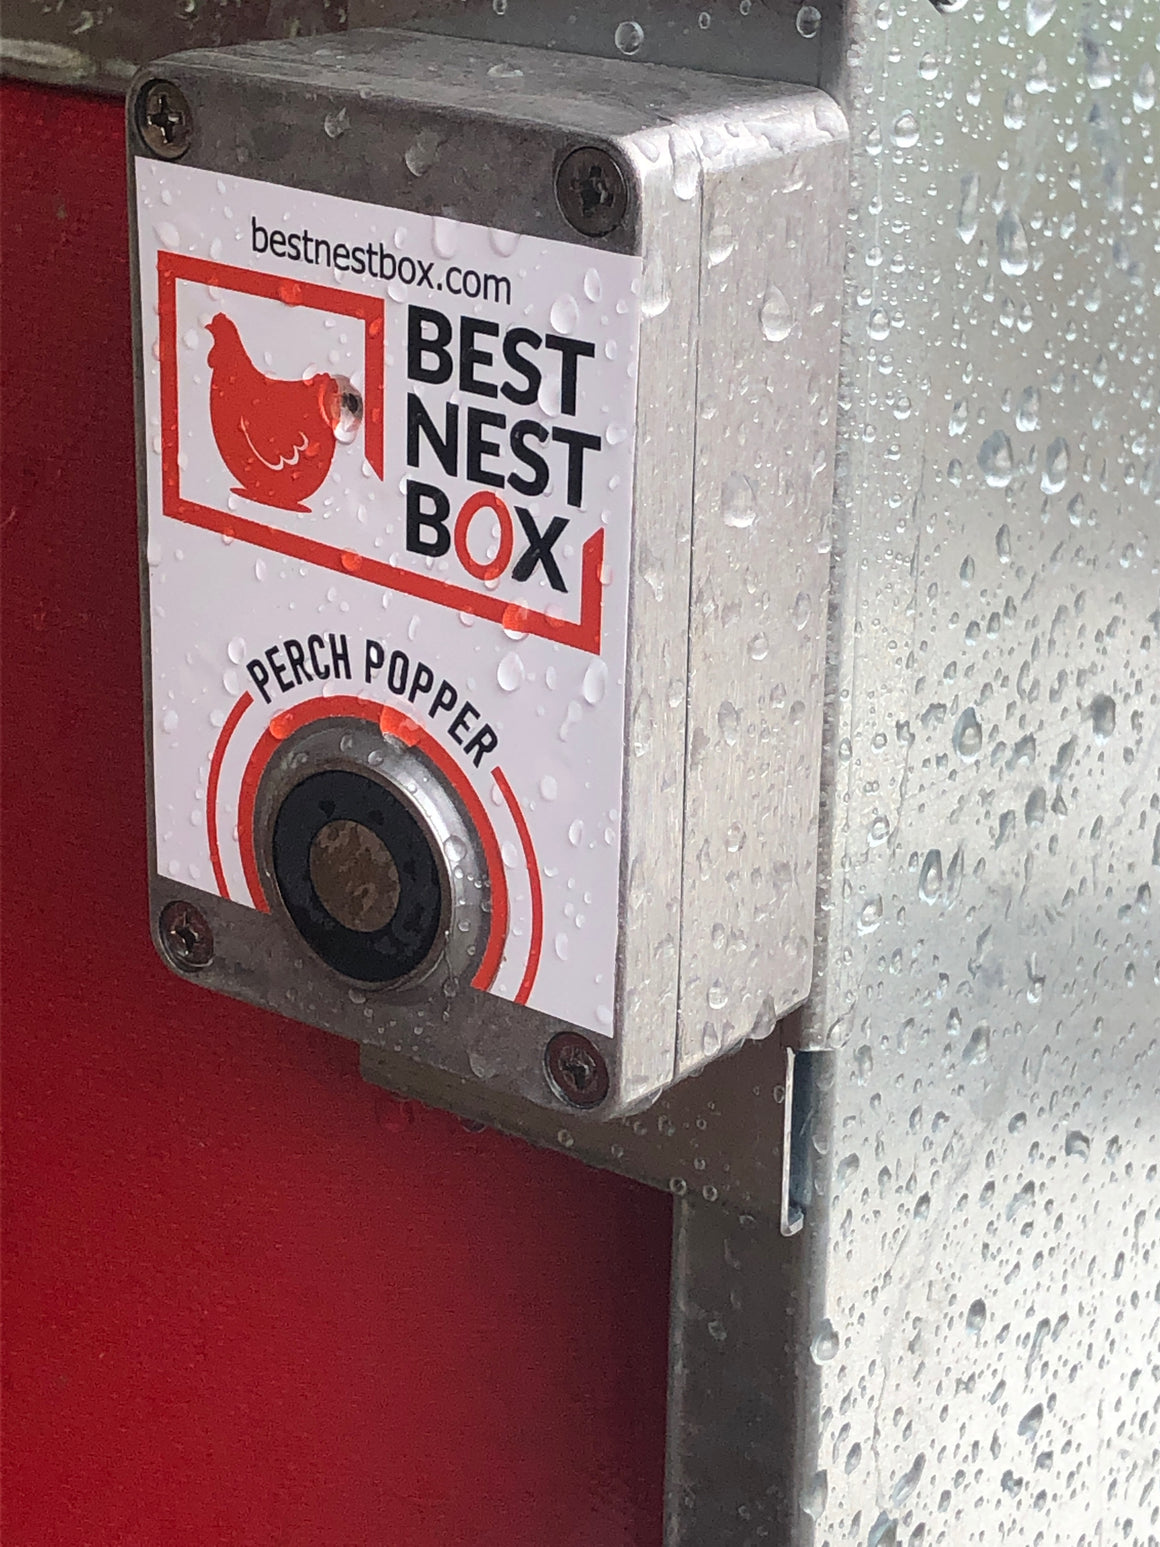 The Original PerchPopper - Automatic chicken nest box opener